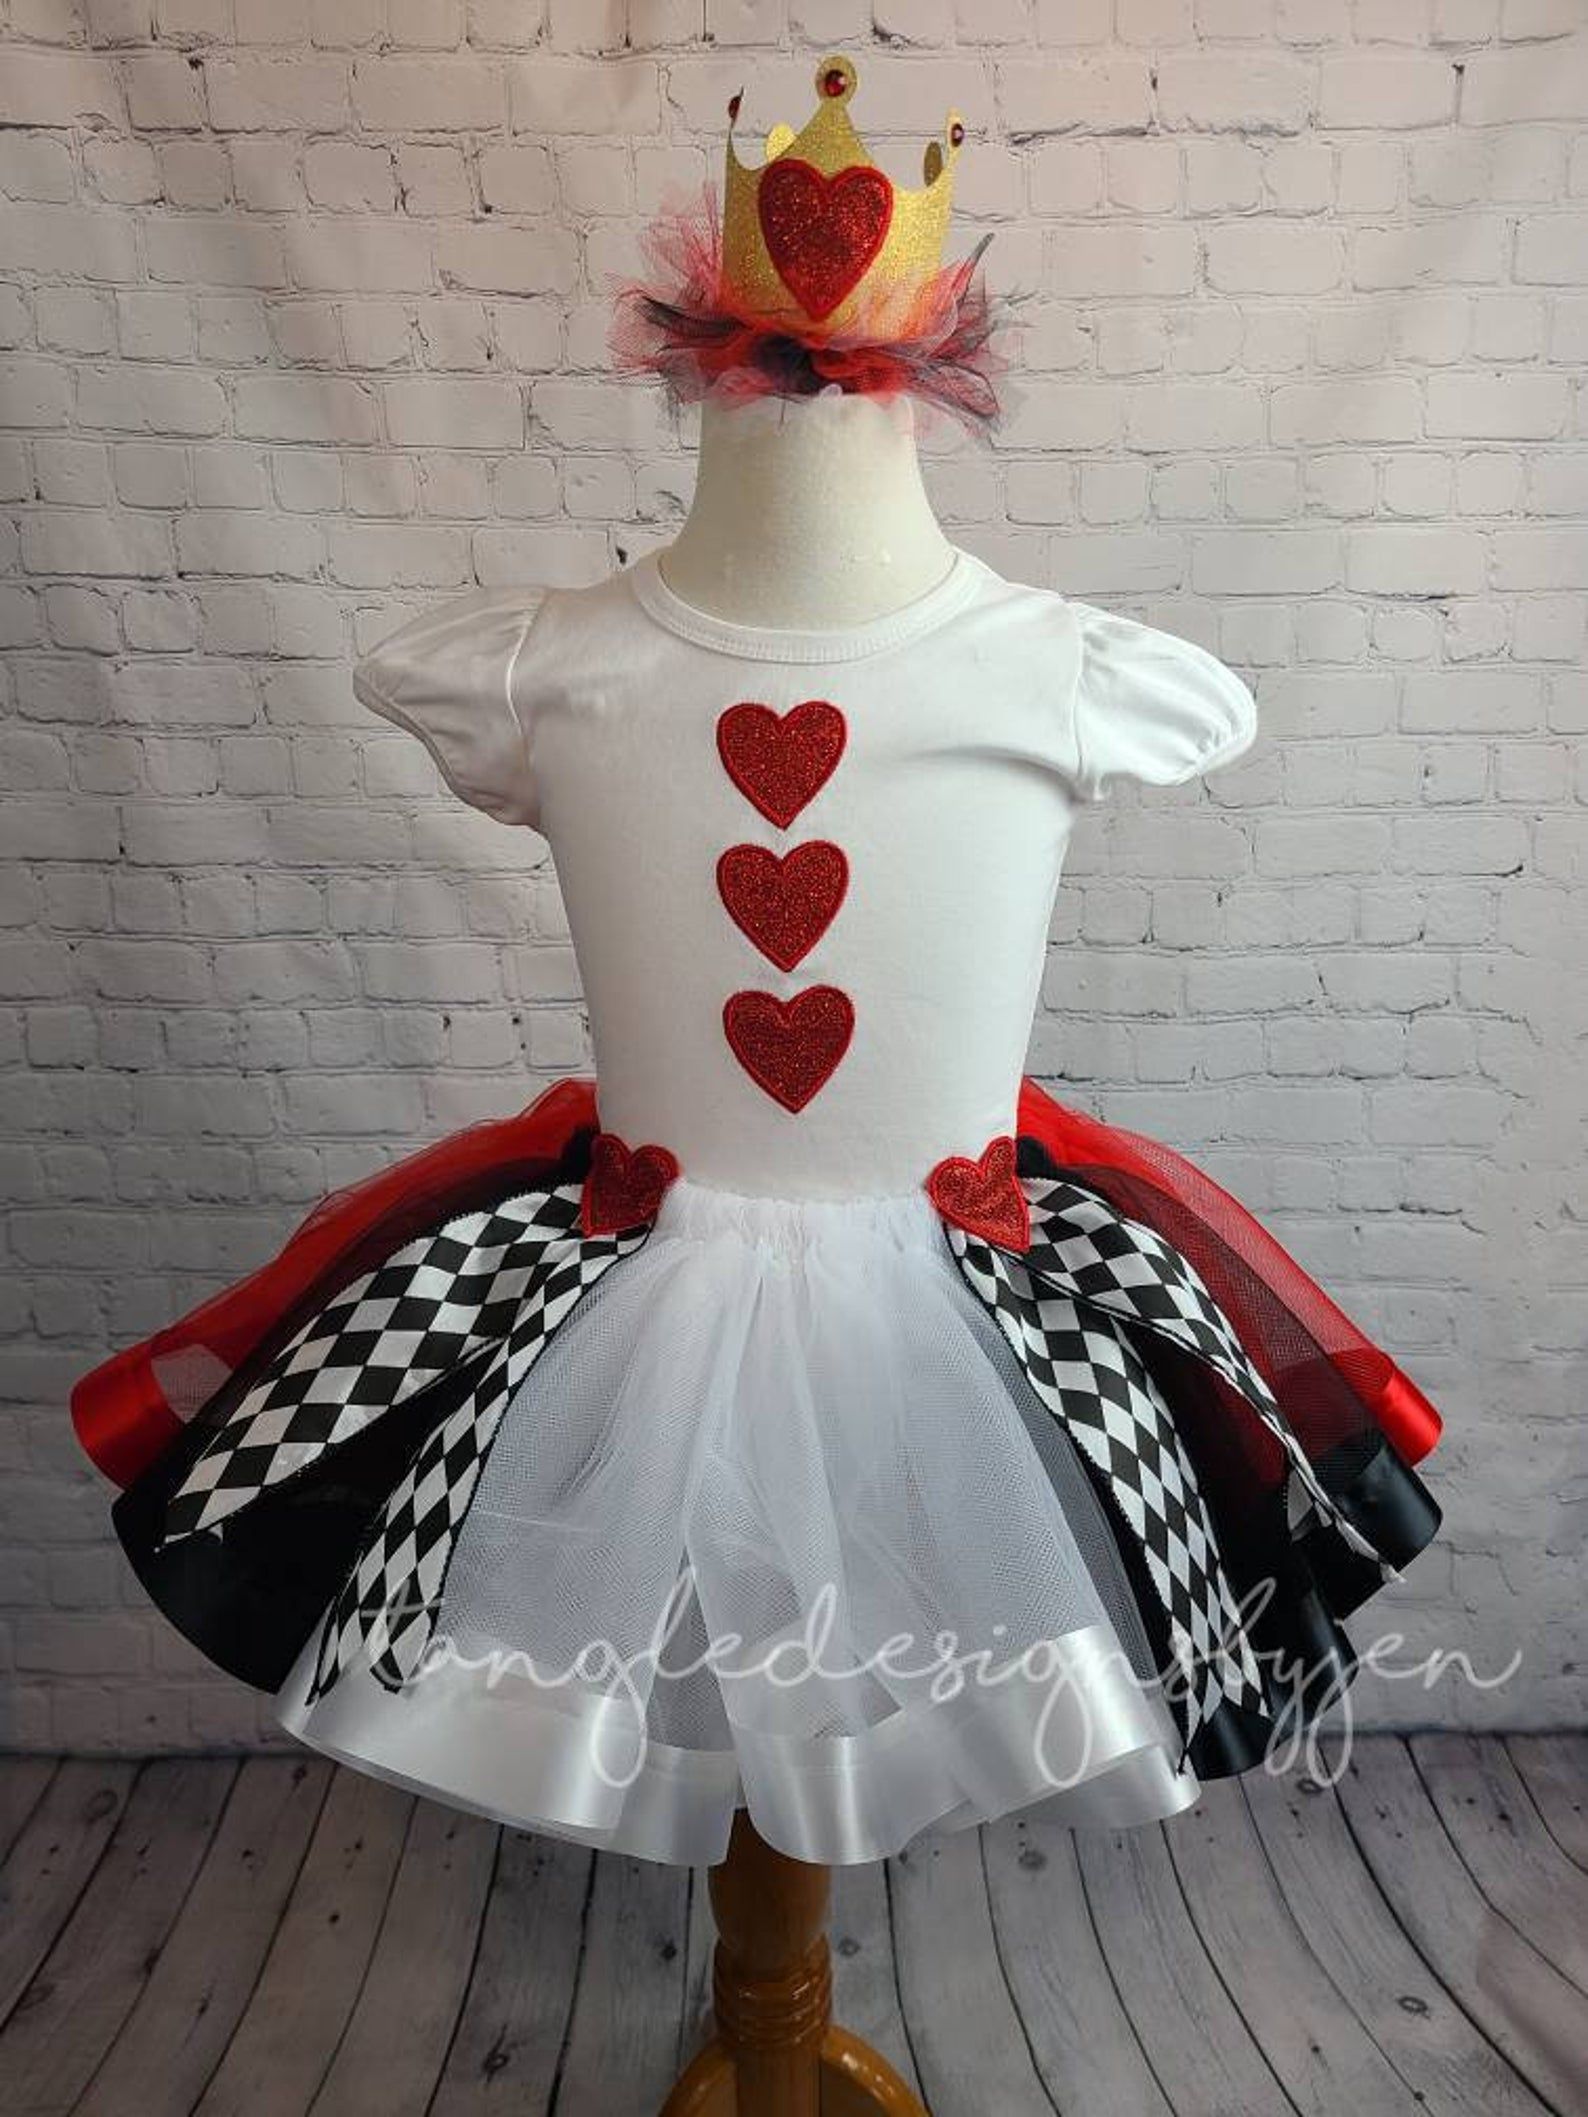 Queen of Hearts costume